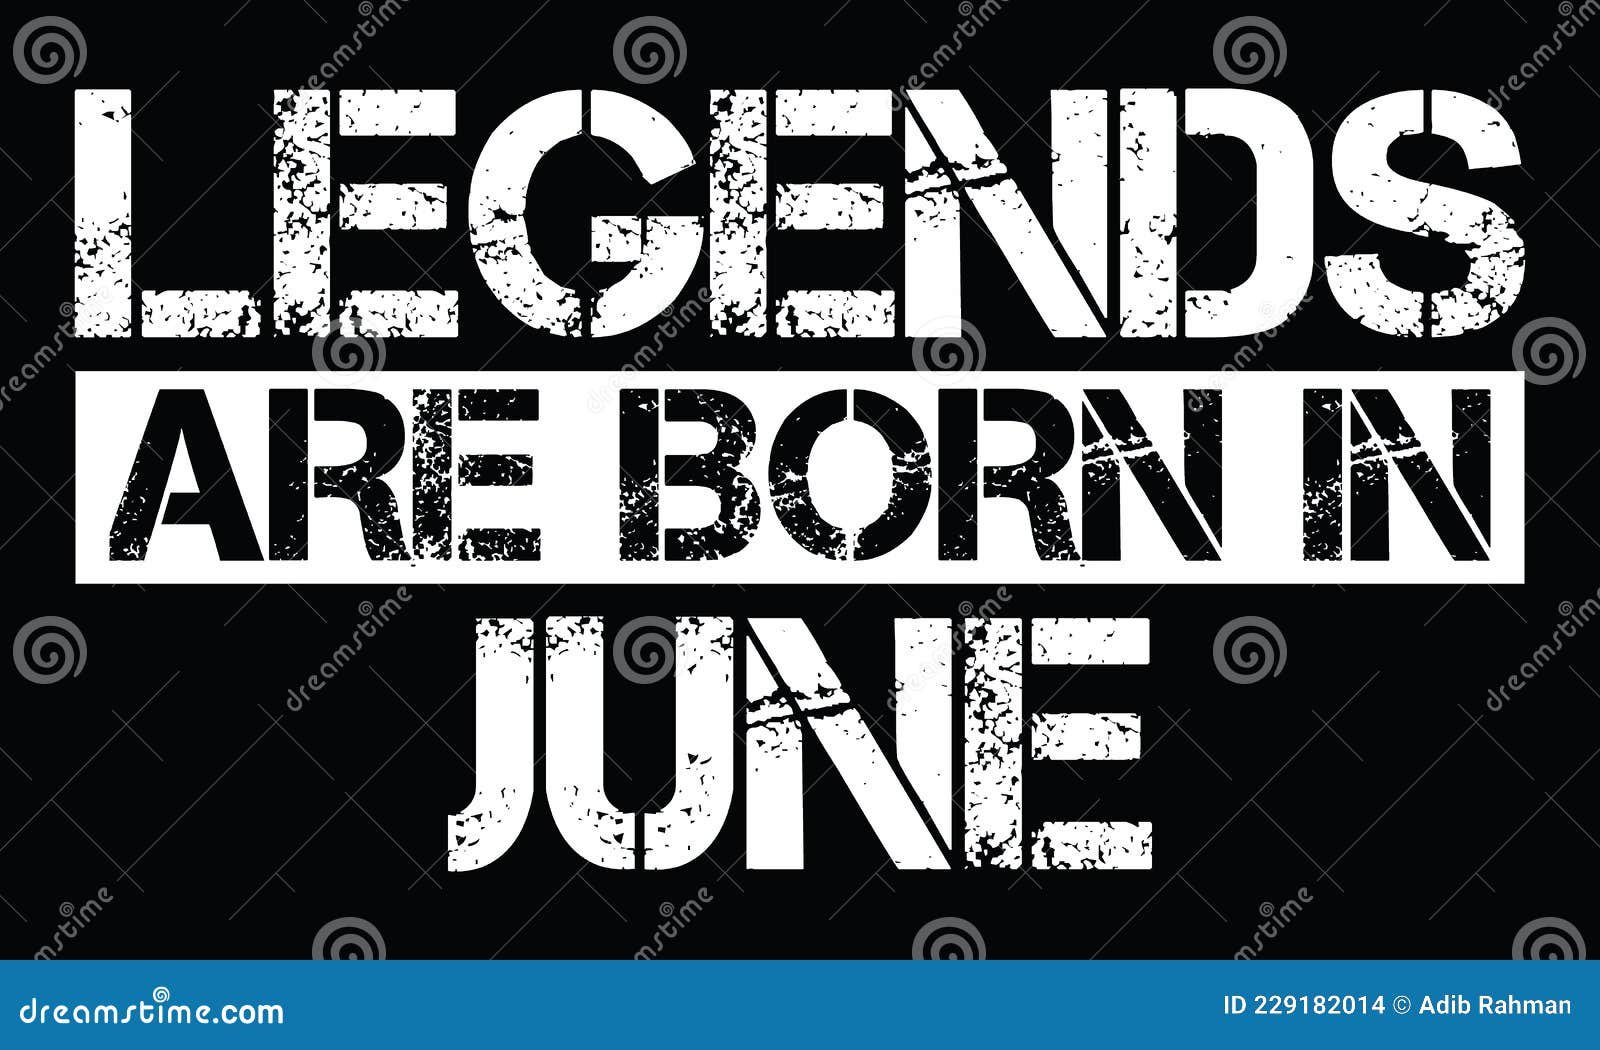 legends are born in june